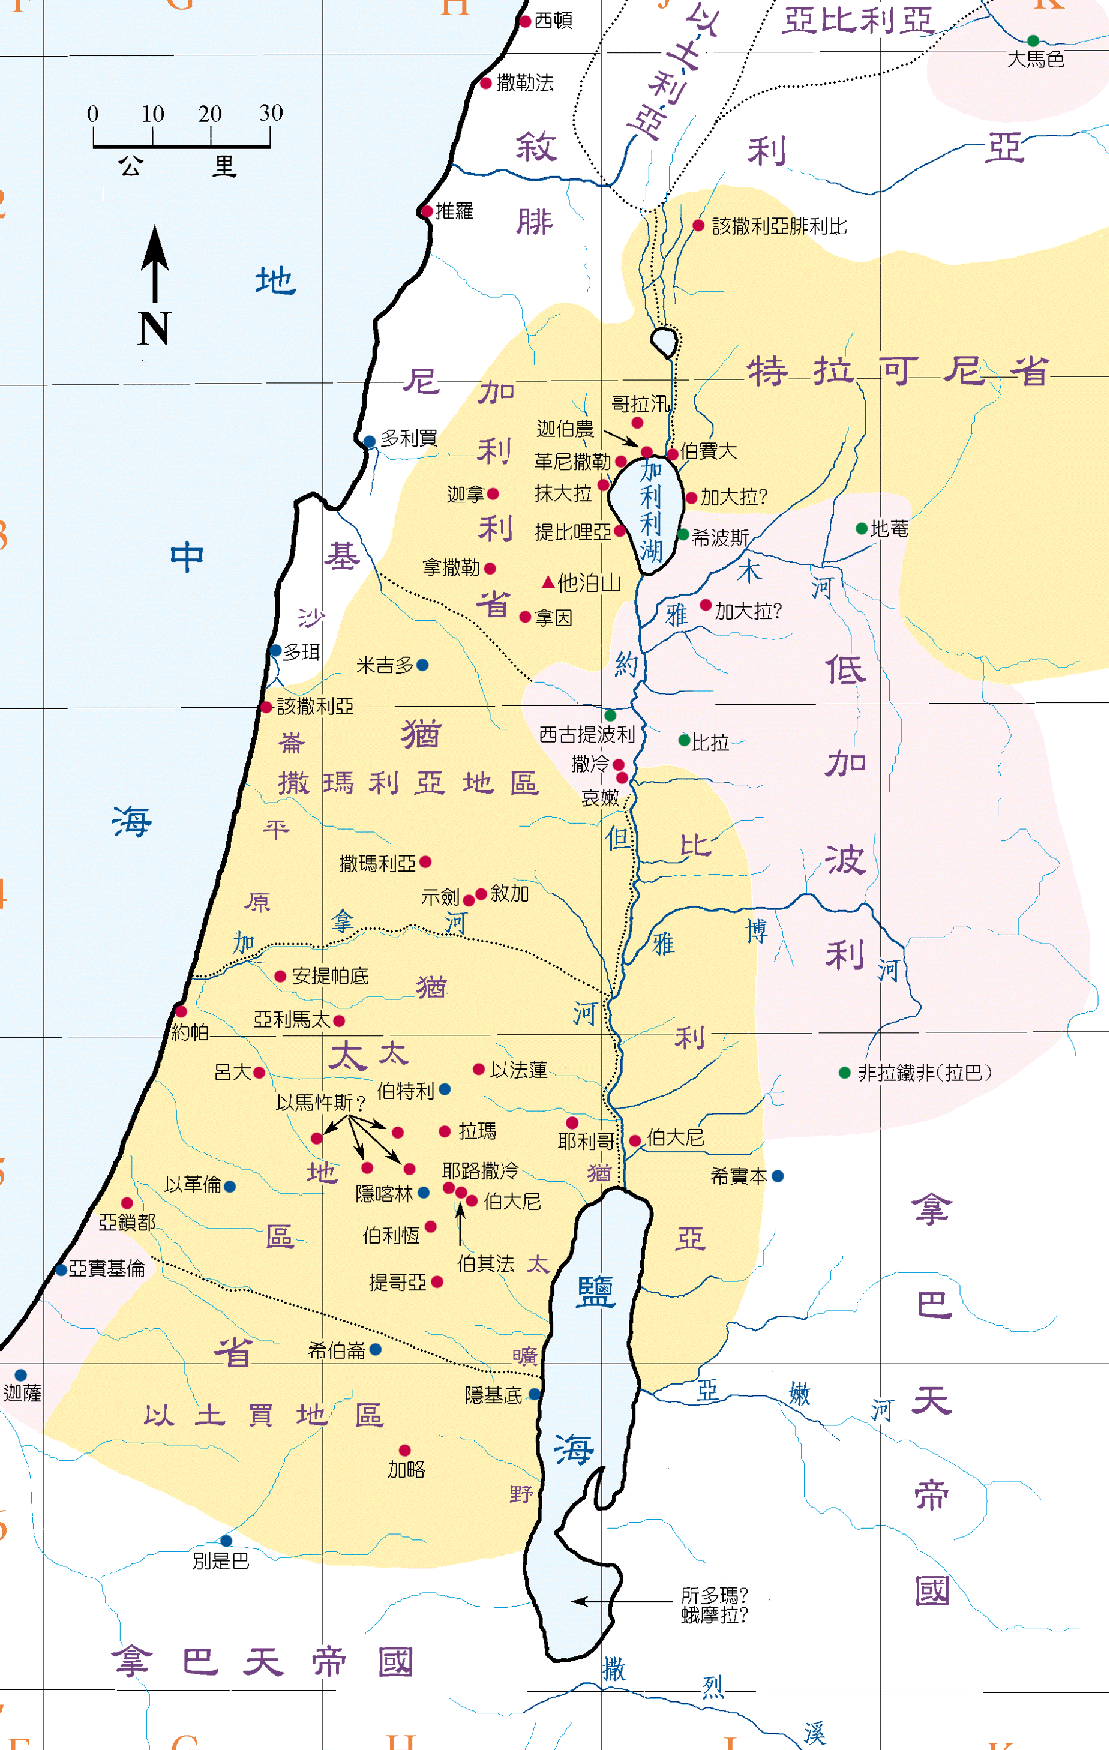 耶稣时代的以色列地图 (点击图片放大)